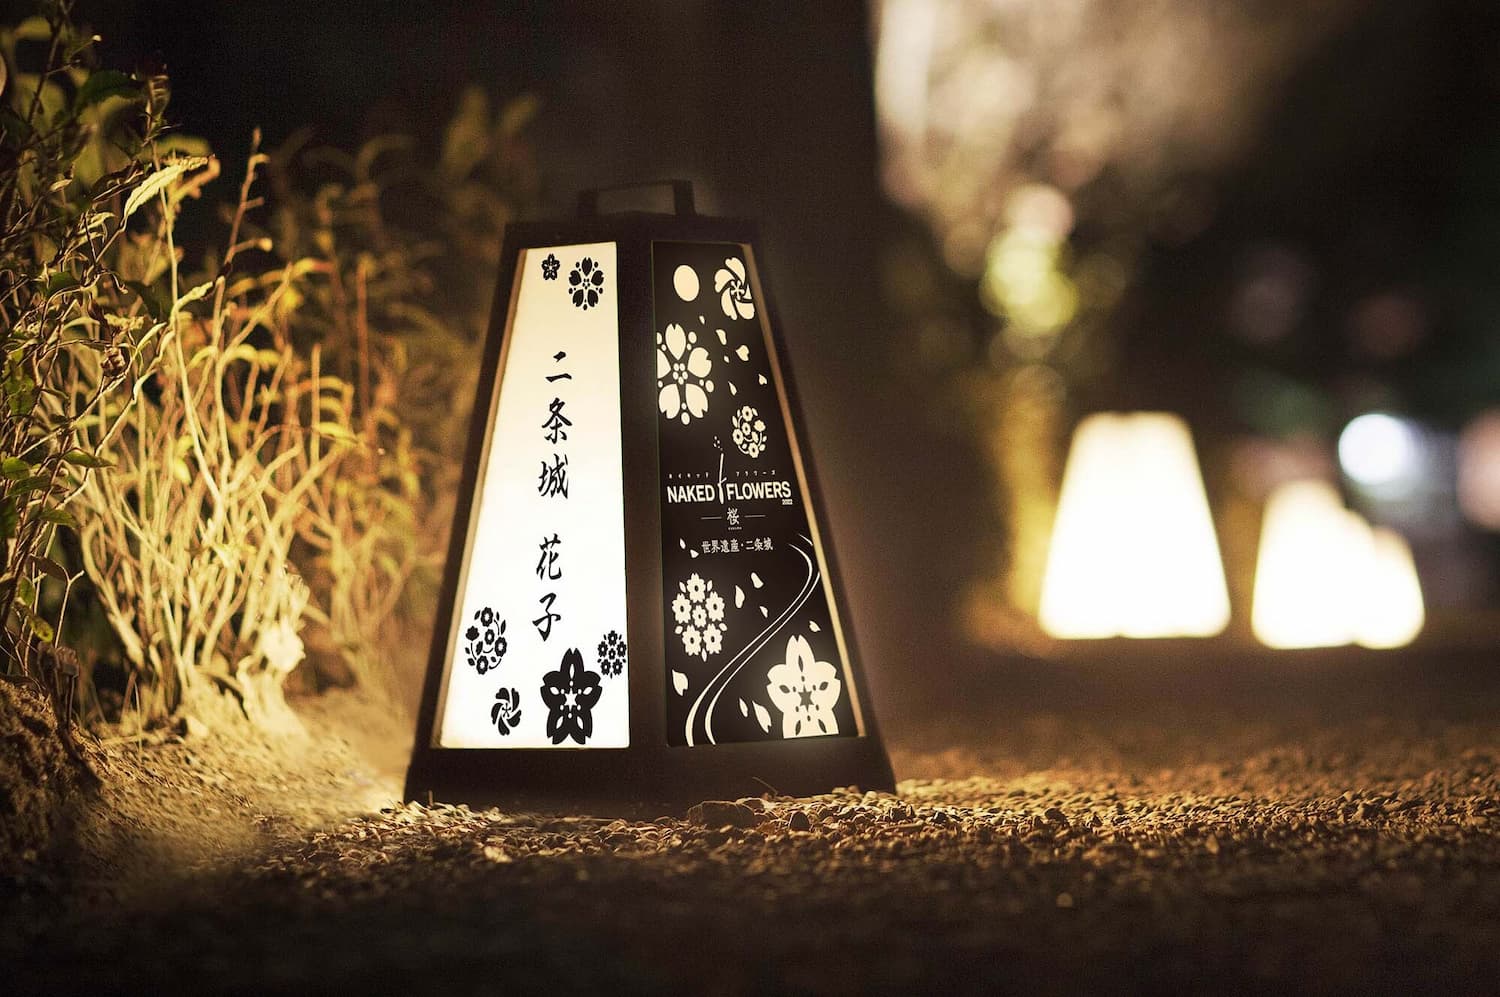 京都の文化財保護を目的としたNAKED FLOWERS お名前行灯プラン